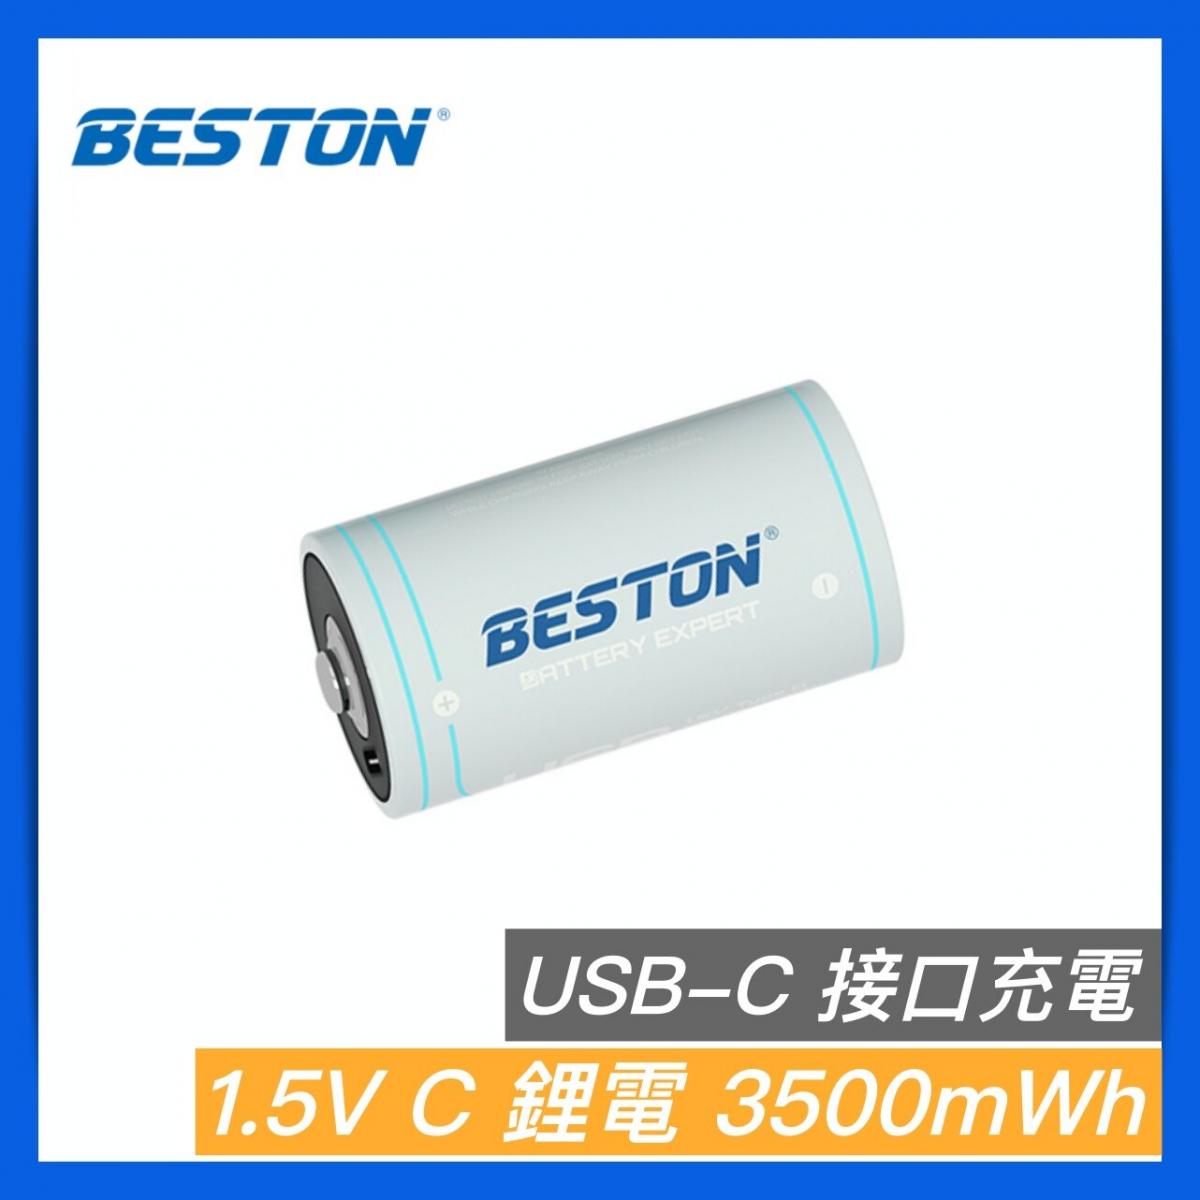 1.5V C型(中電) USB-C 充電池 3500mWh USB充電 鋰電池